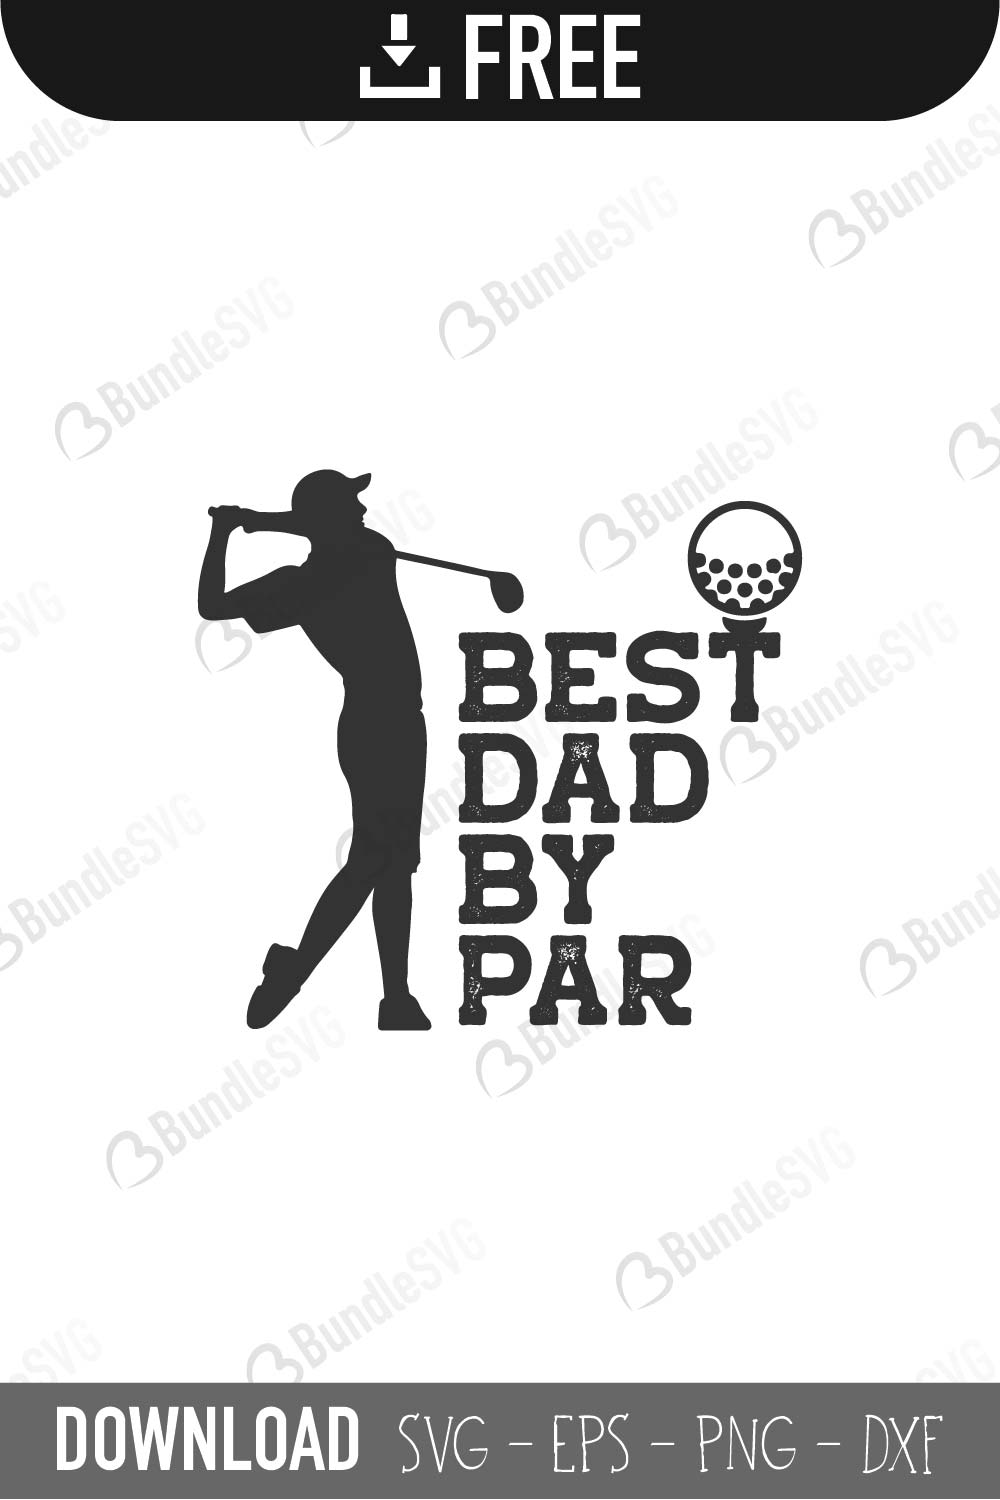 Download Best Dad By Par SVG Cut Files Free Download | BundleSVG